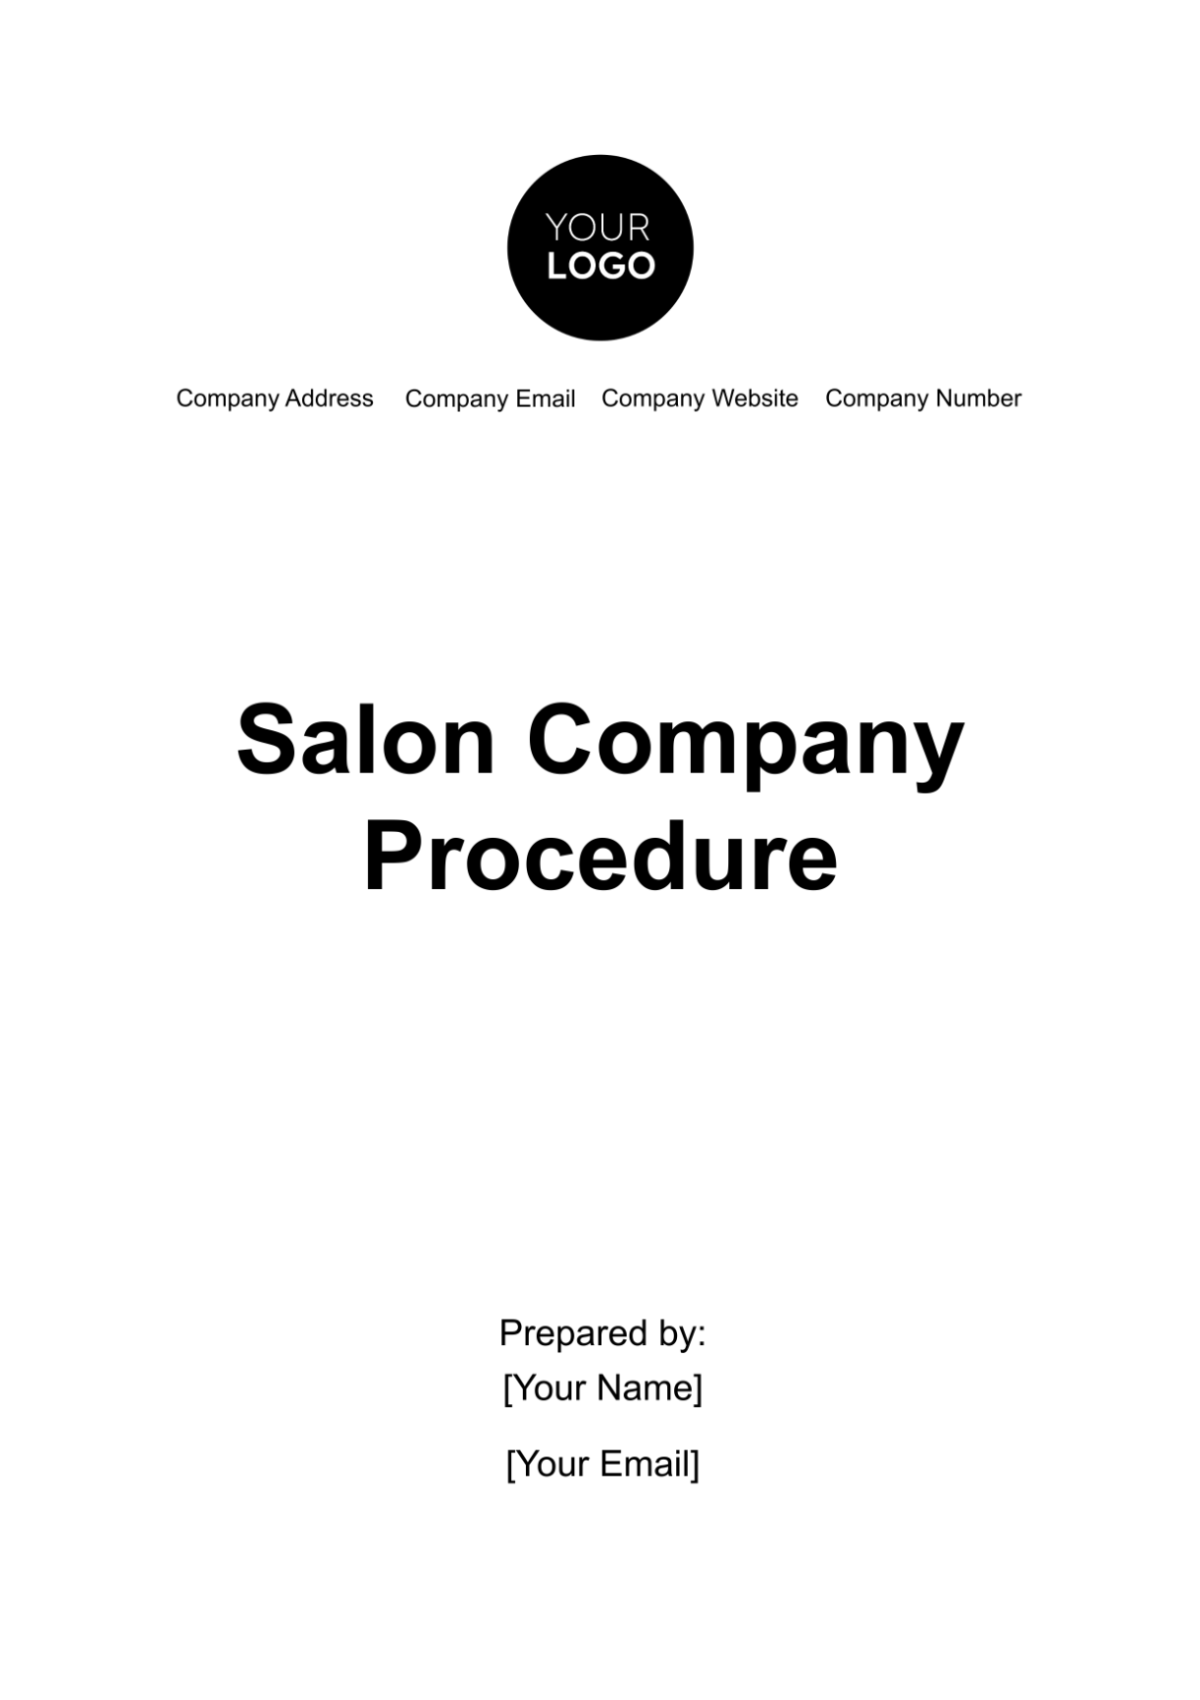 Salon Company Procedure Template